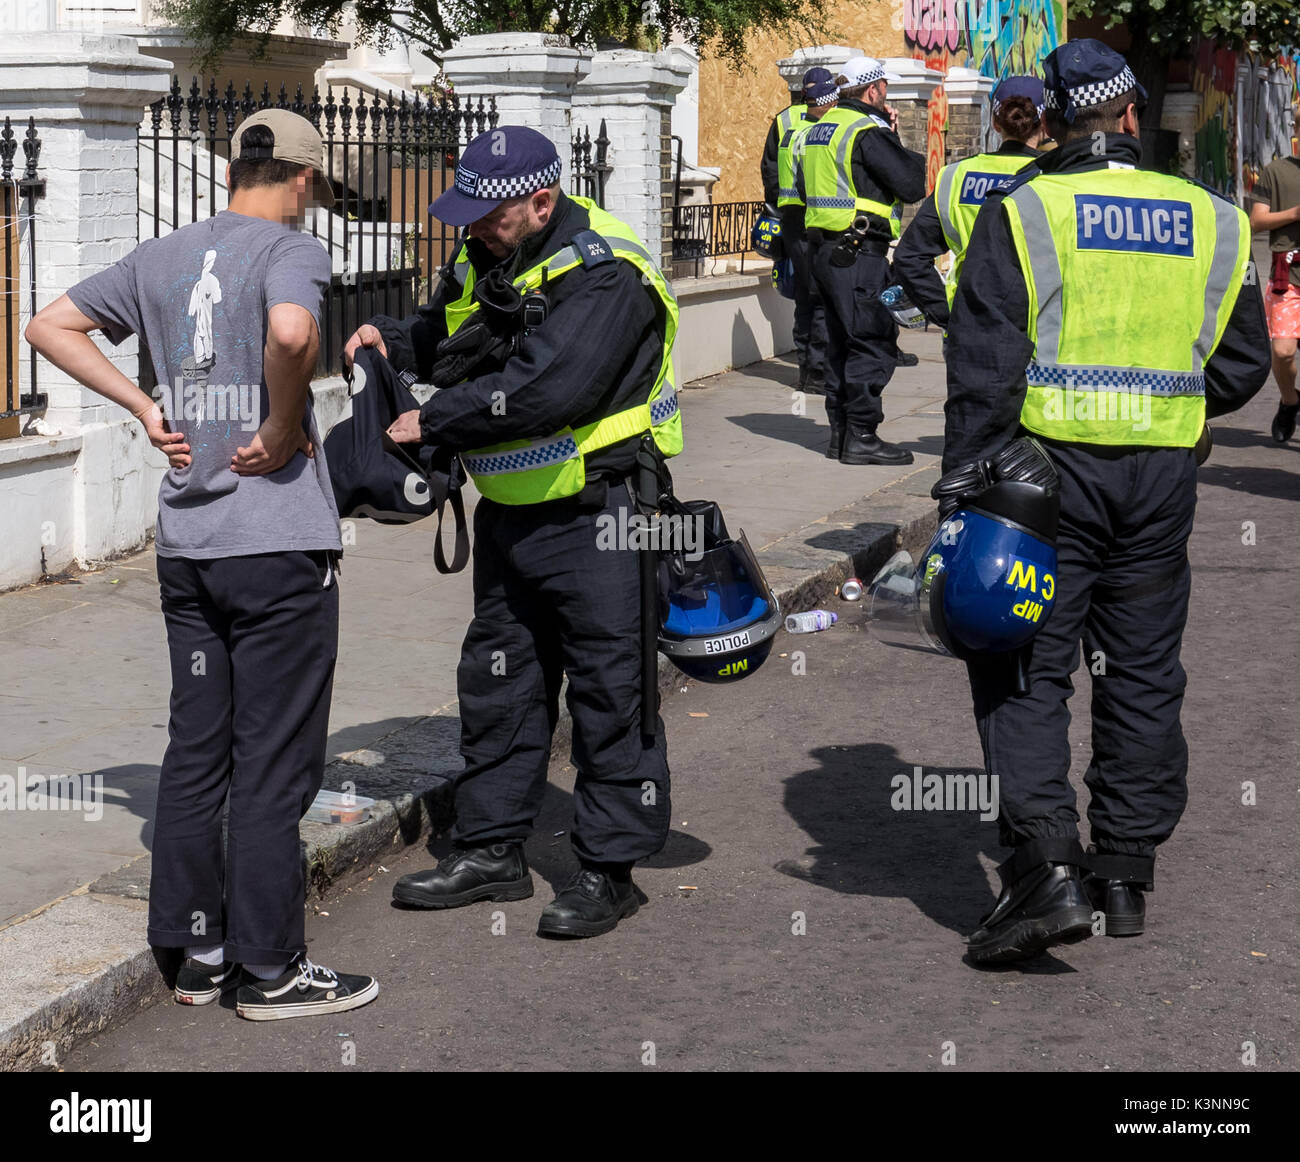 Londres, Royaume-Uni. 28 août 2017. Effectuer la recherche et l'arrêt de la police sur les suspects pendant le carnaval de Notting Hill 2017© Guy Josse / Alamy Live News Banque D'Images